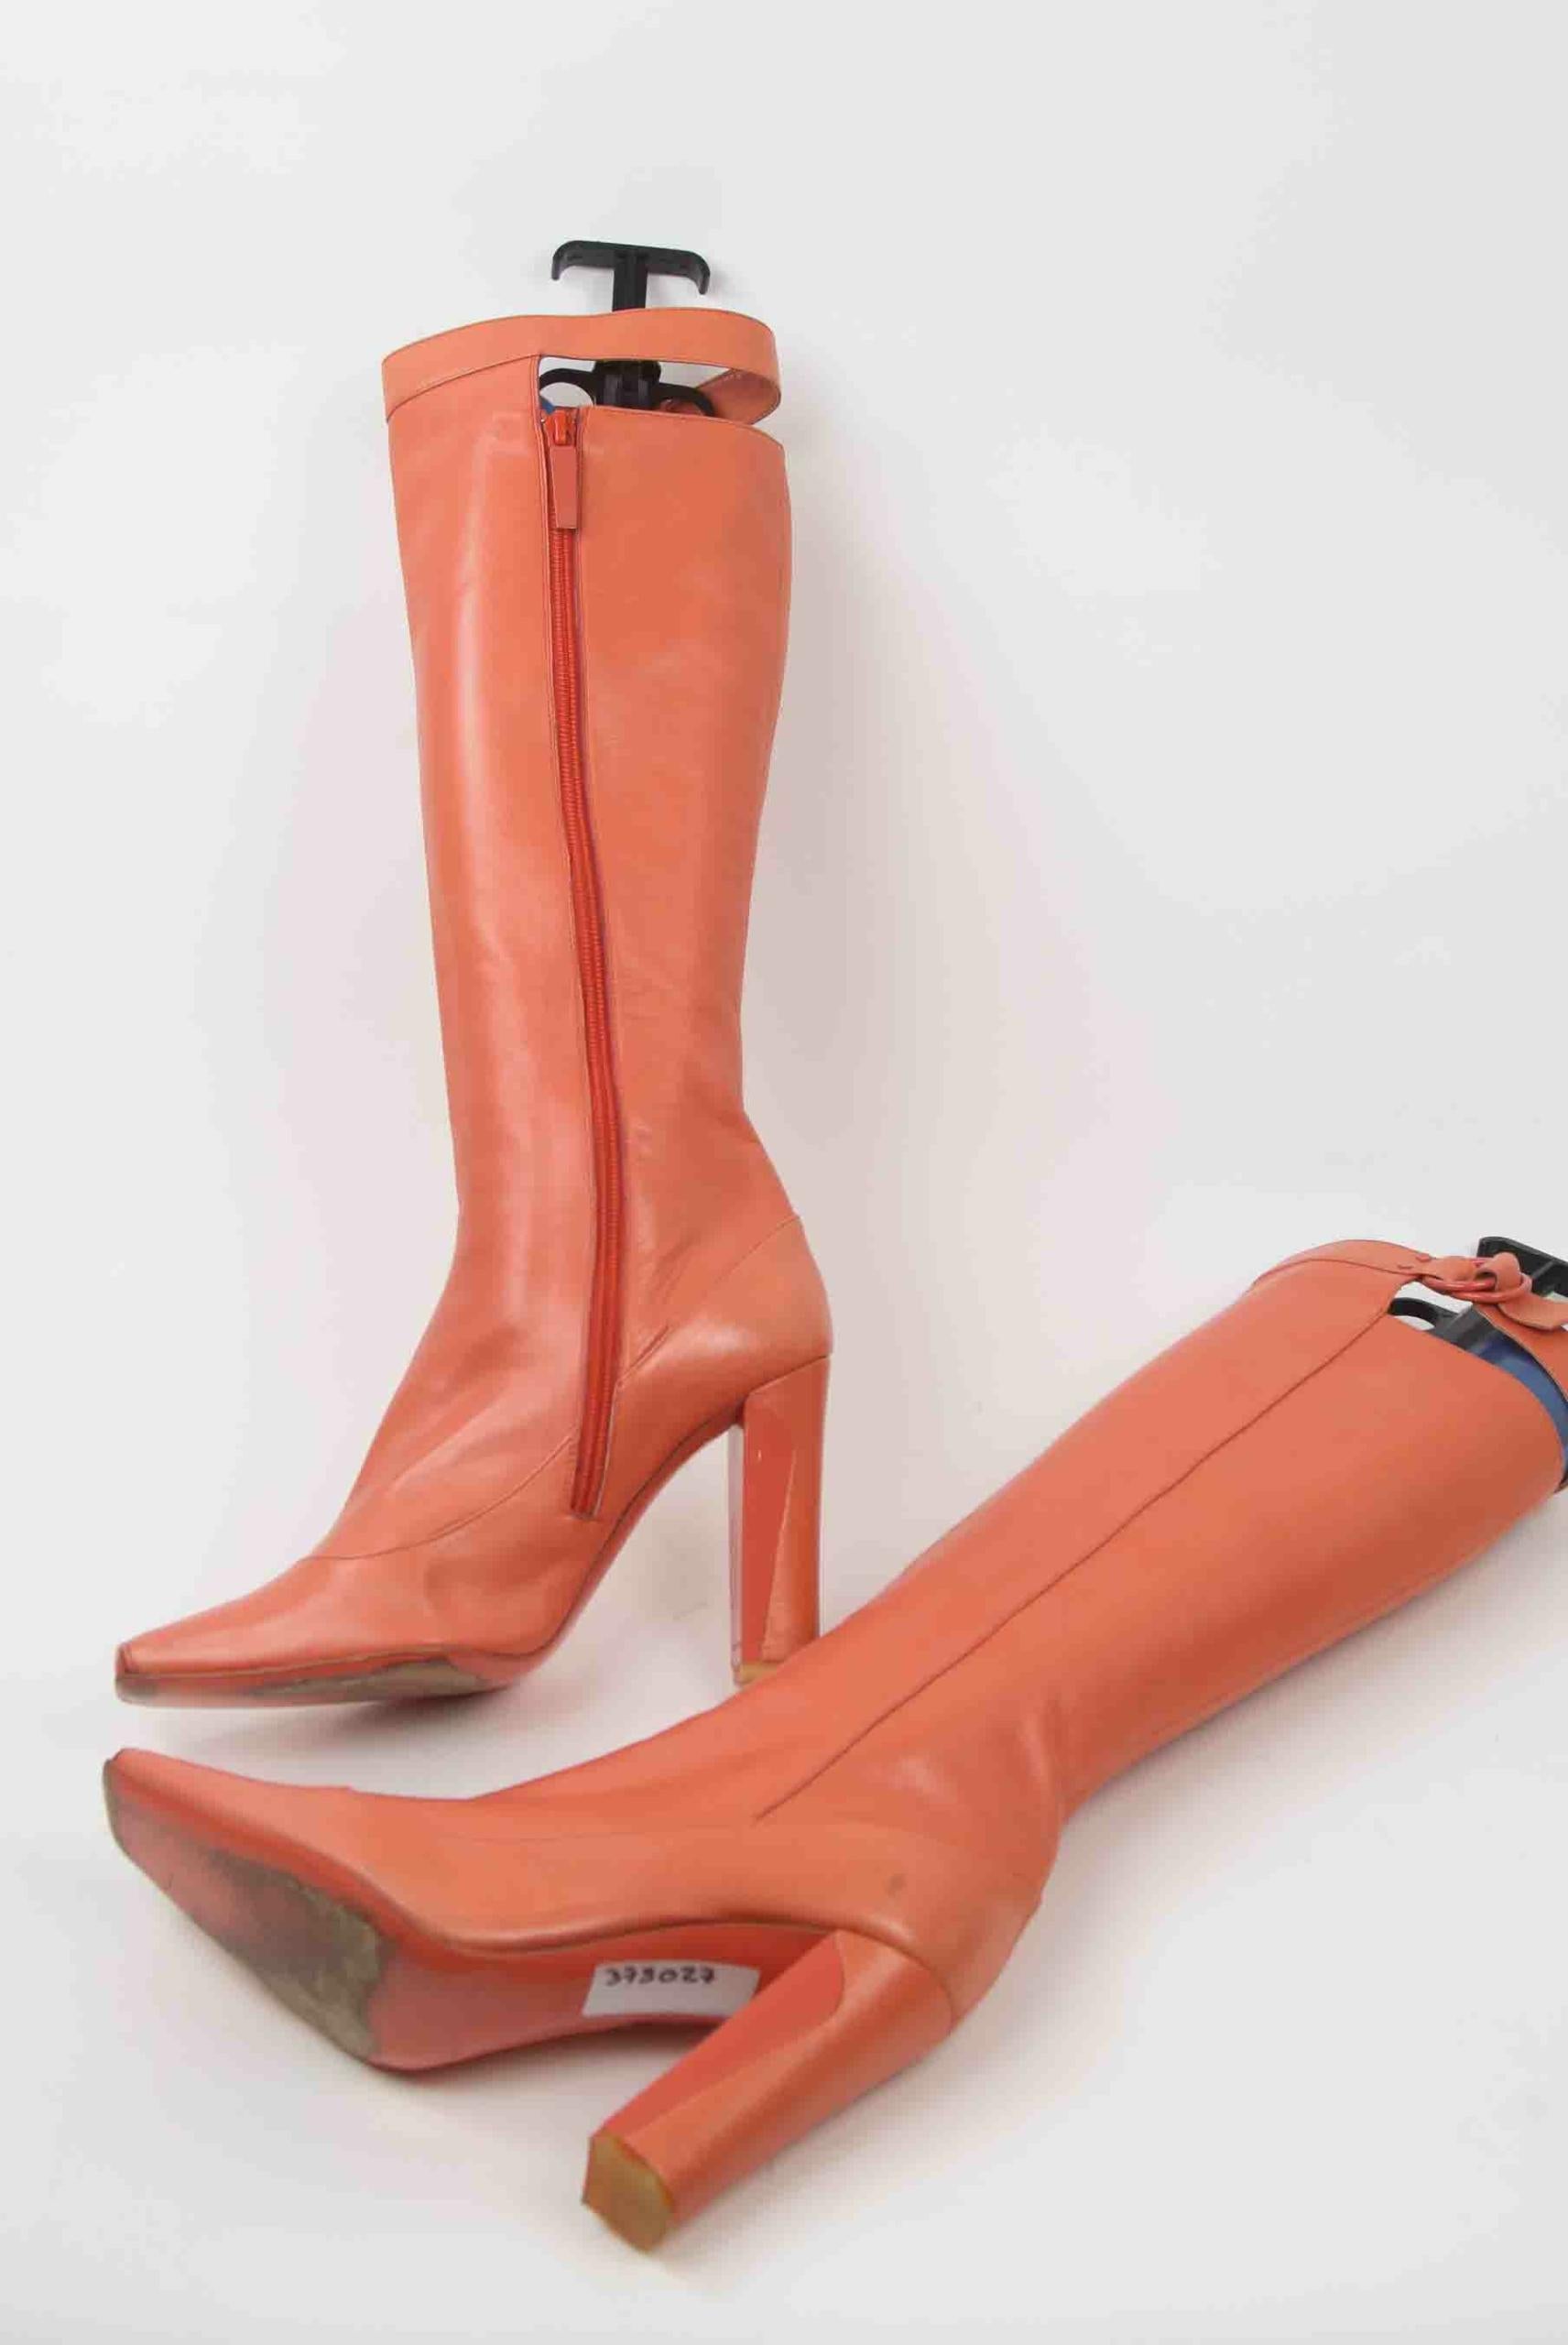 Bottes Louis Vuitton pour femme  Achat / Vente de chaussures de